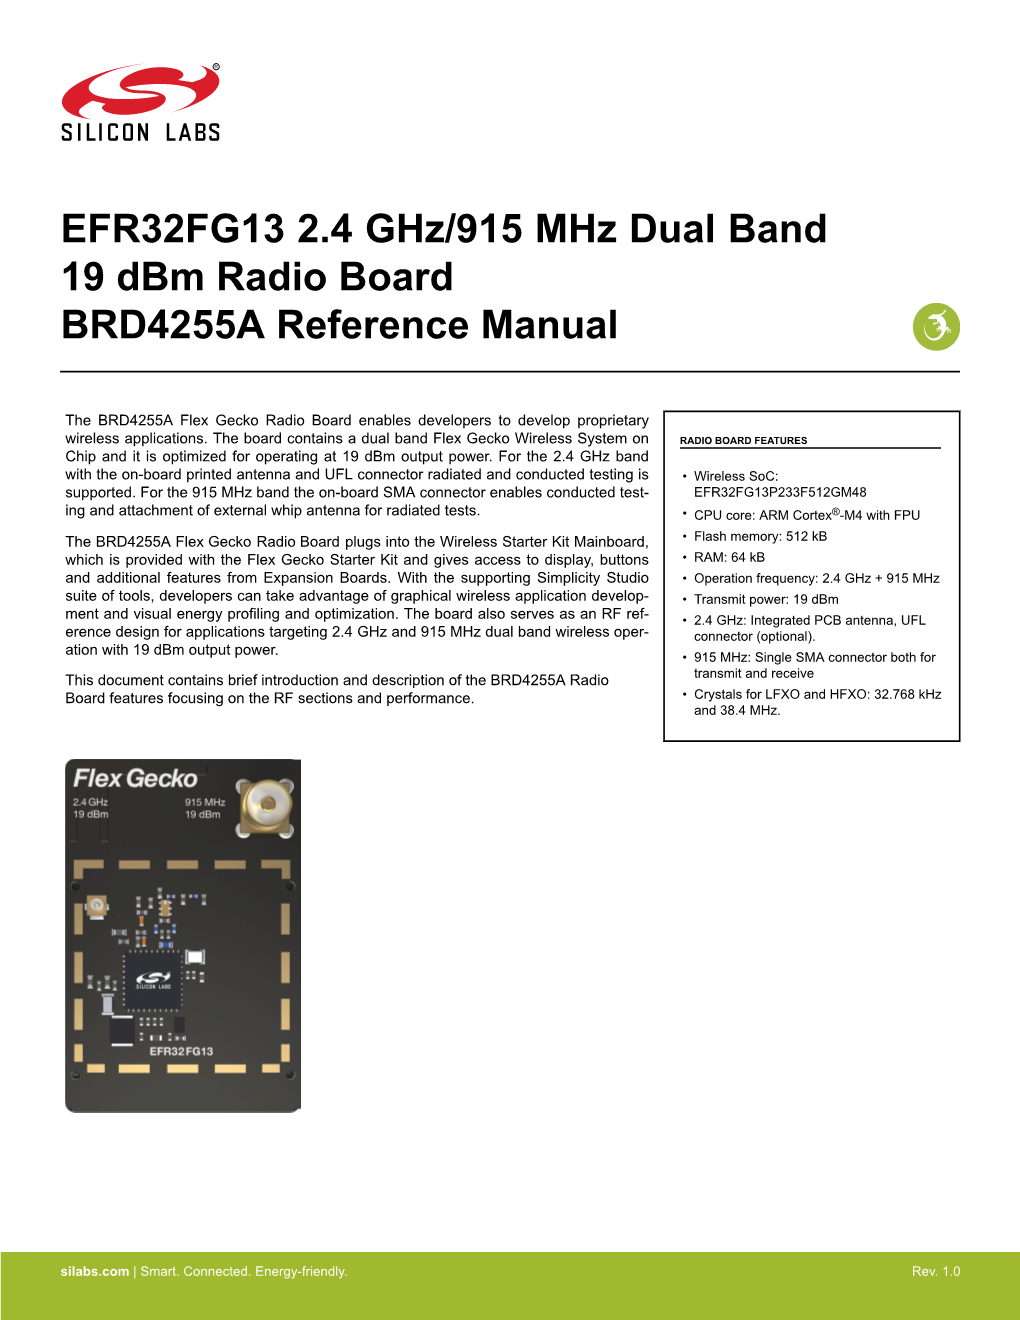 EFR32FG13 2.4 Ghz/915 Mhz Dual Band 19 Dbm Radio Board BRD4255A Reference Manual